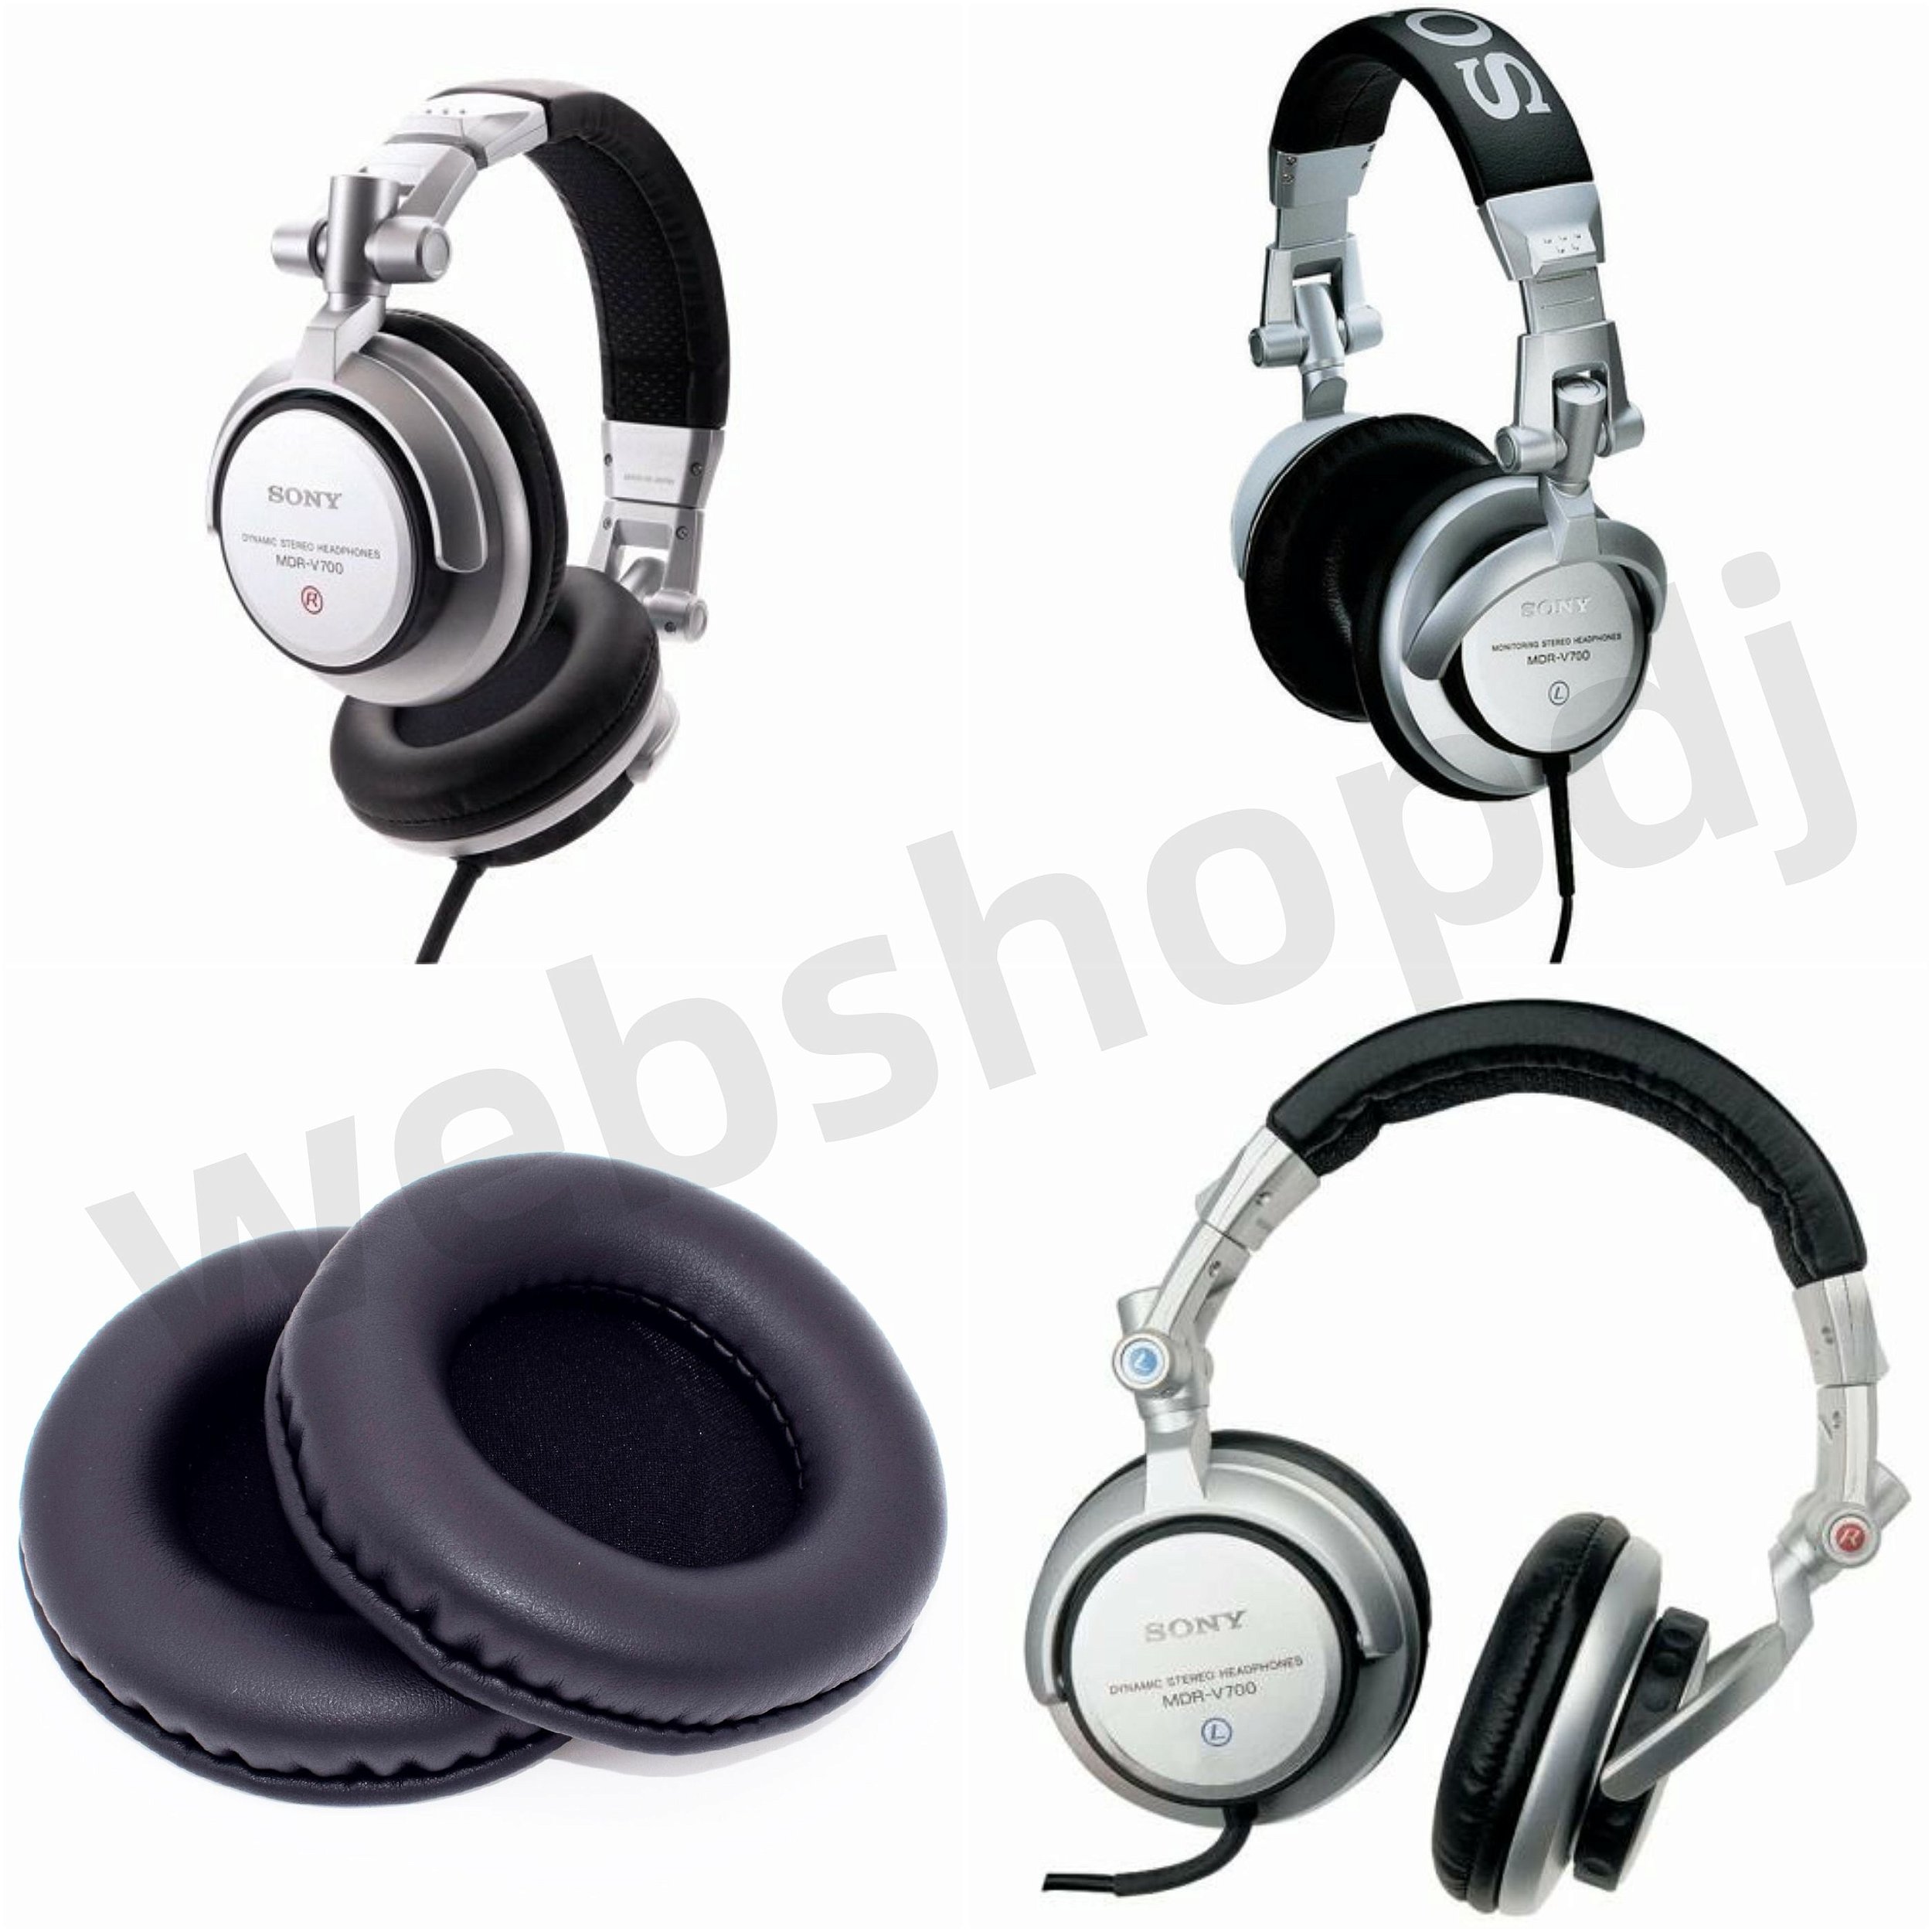 Ear Pad Sony MDR-V700 Black (almofada de reposição) importado - webshopdj -  Equipamentos e acessórios para DJs